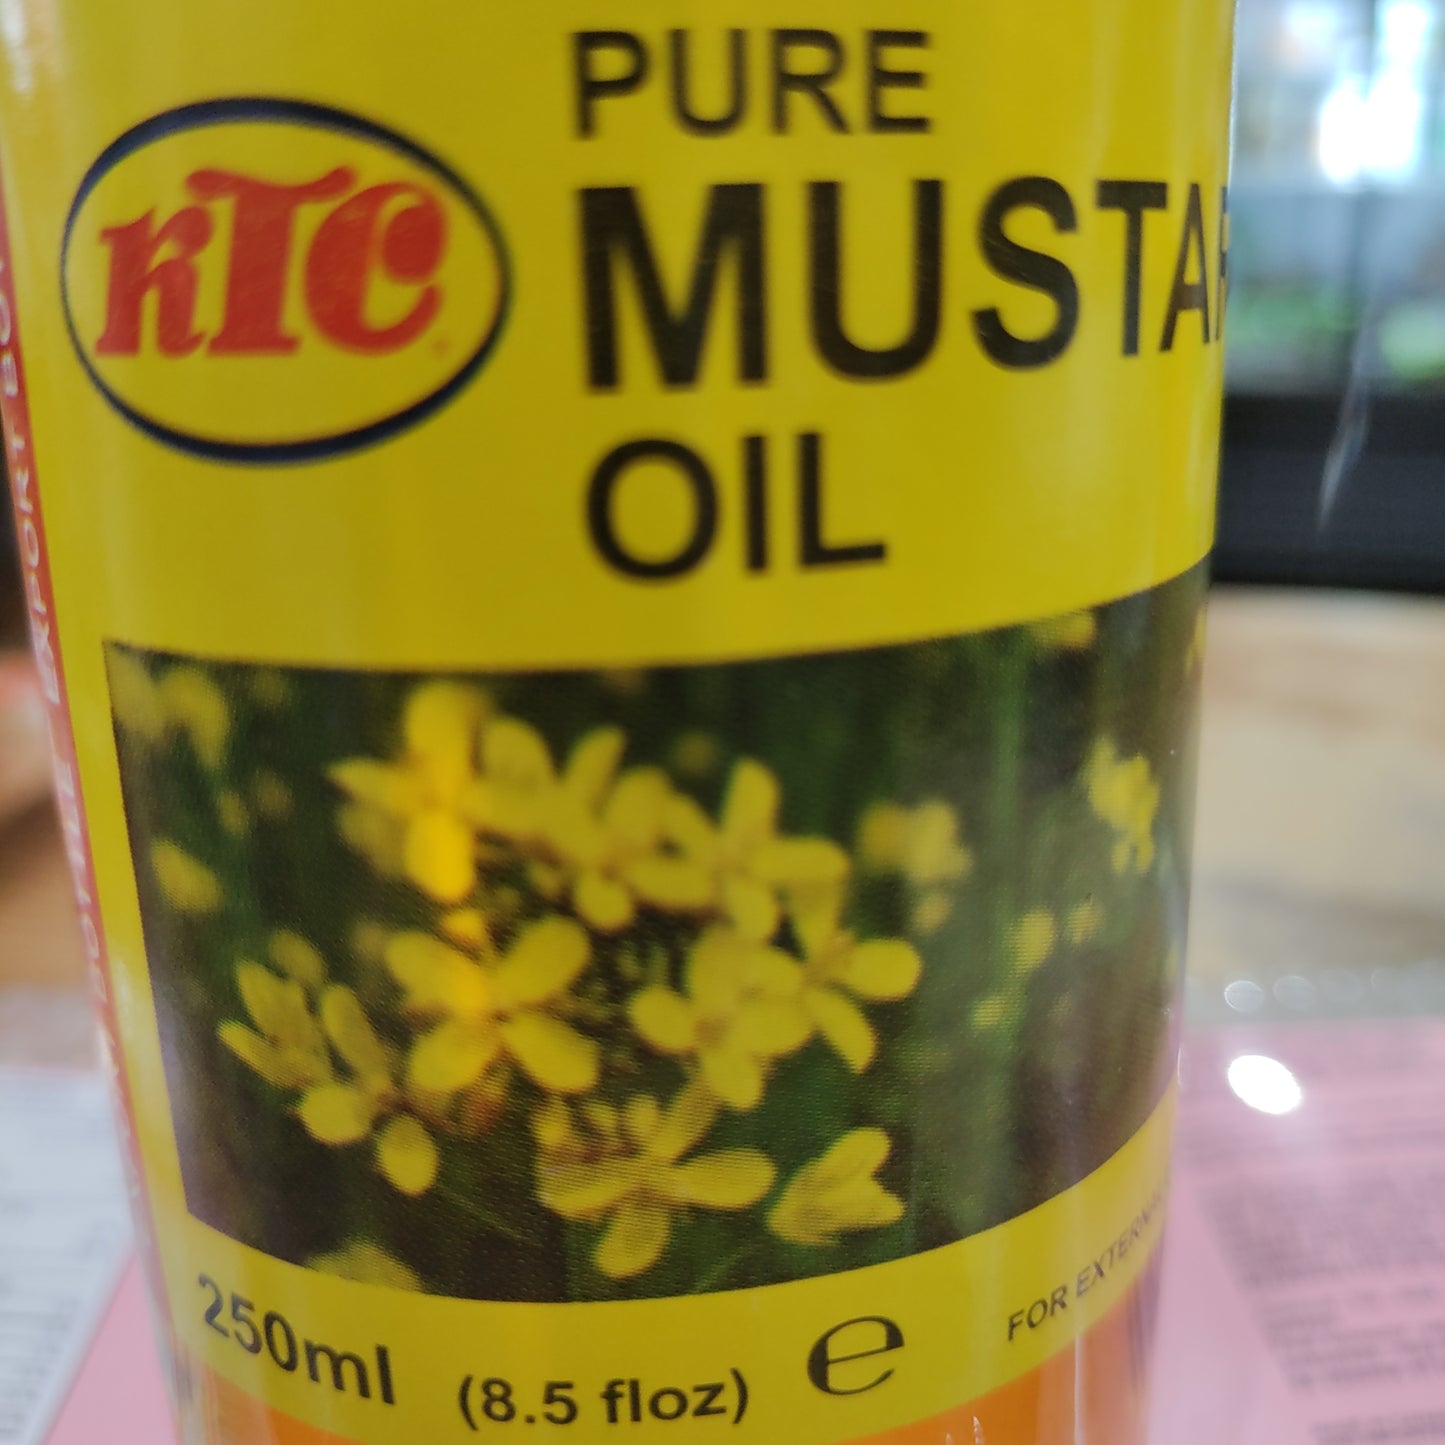 Ktc Mustard Oil 250 Ml